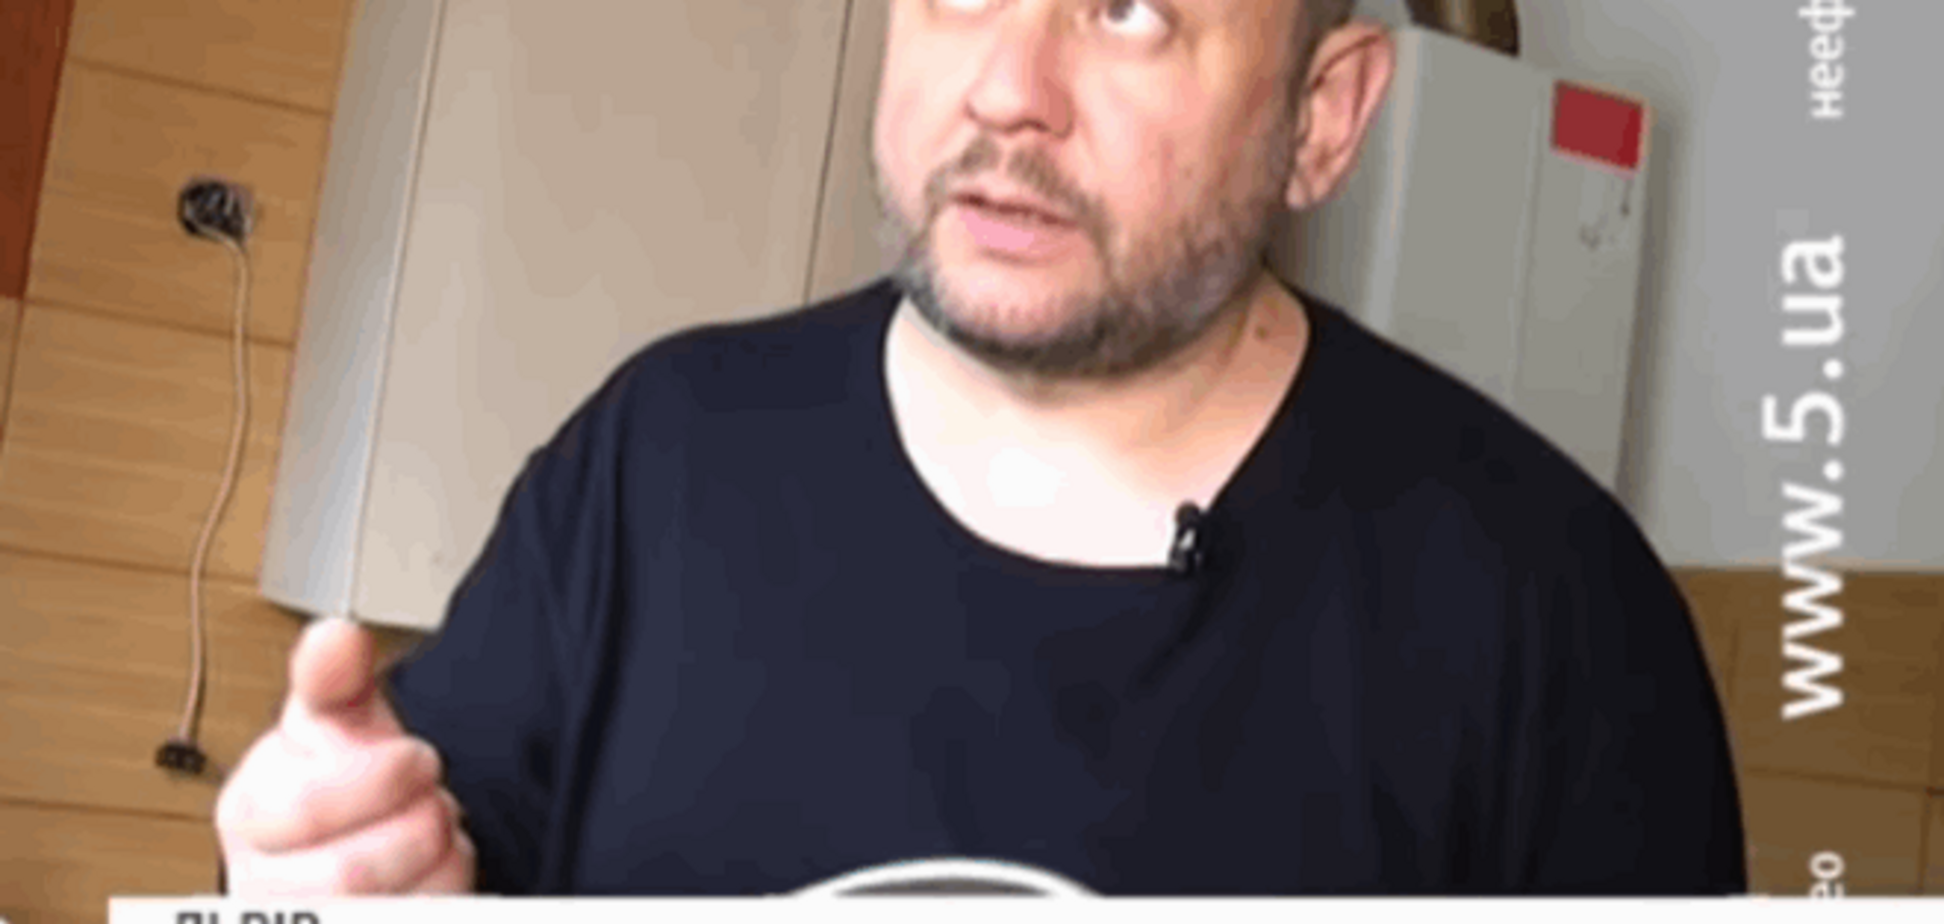 Не имя красит человека: как москвич Азаров штампует во Львове колбаски для АТО, опубликовано видео